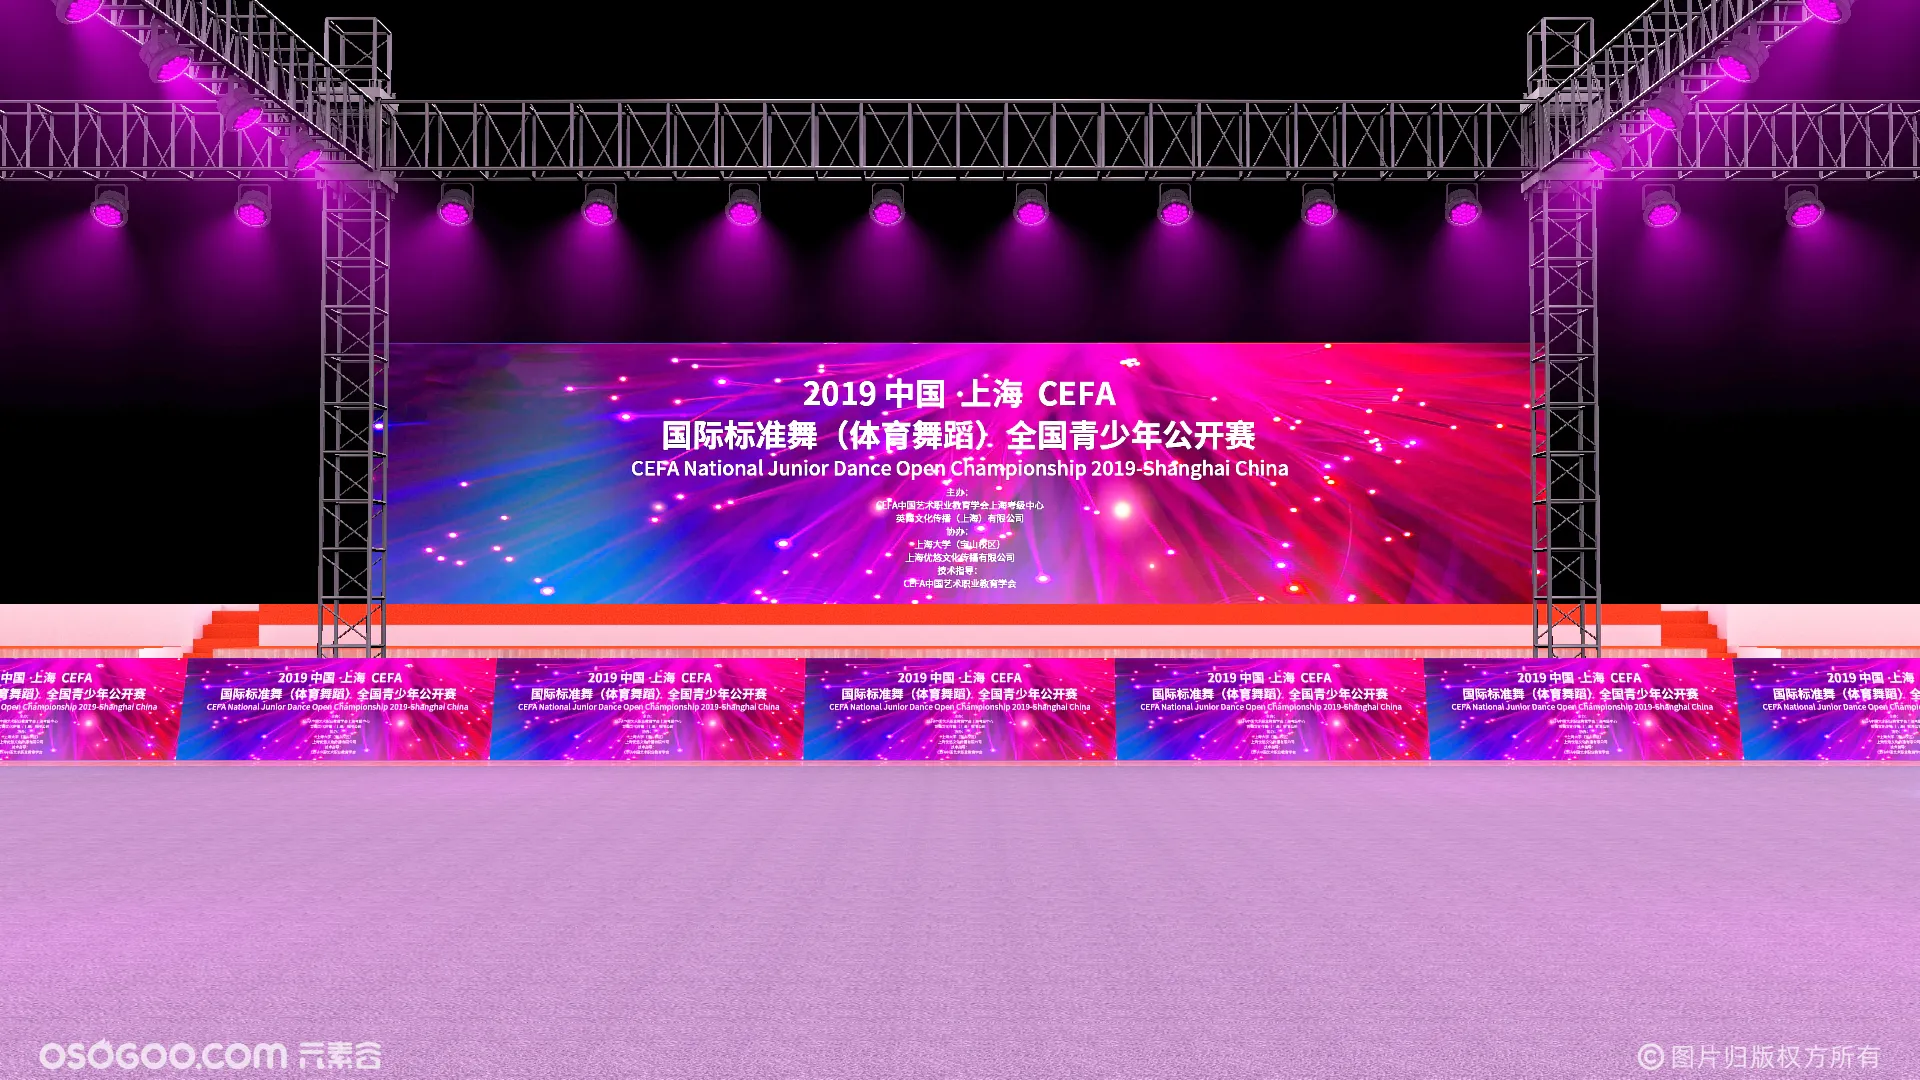 2019上海CEFA国际标准舞全国青少年公开赛